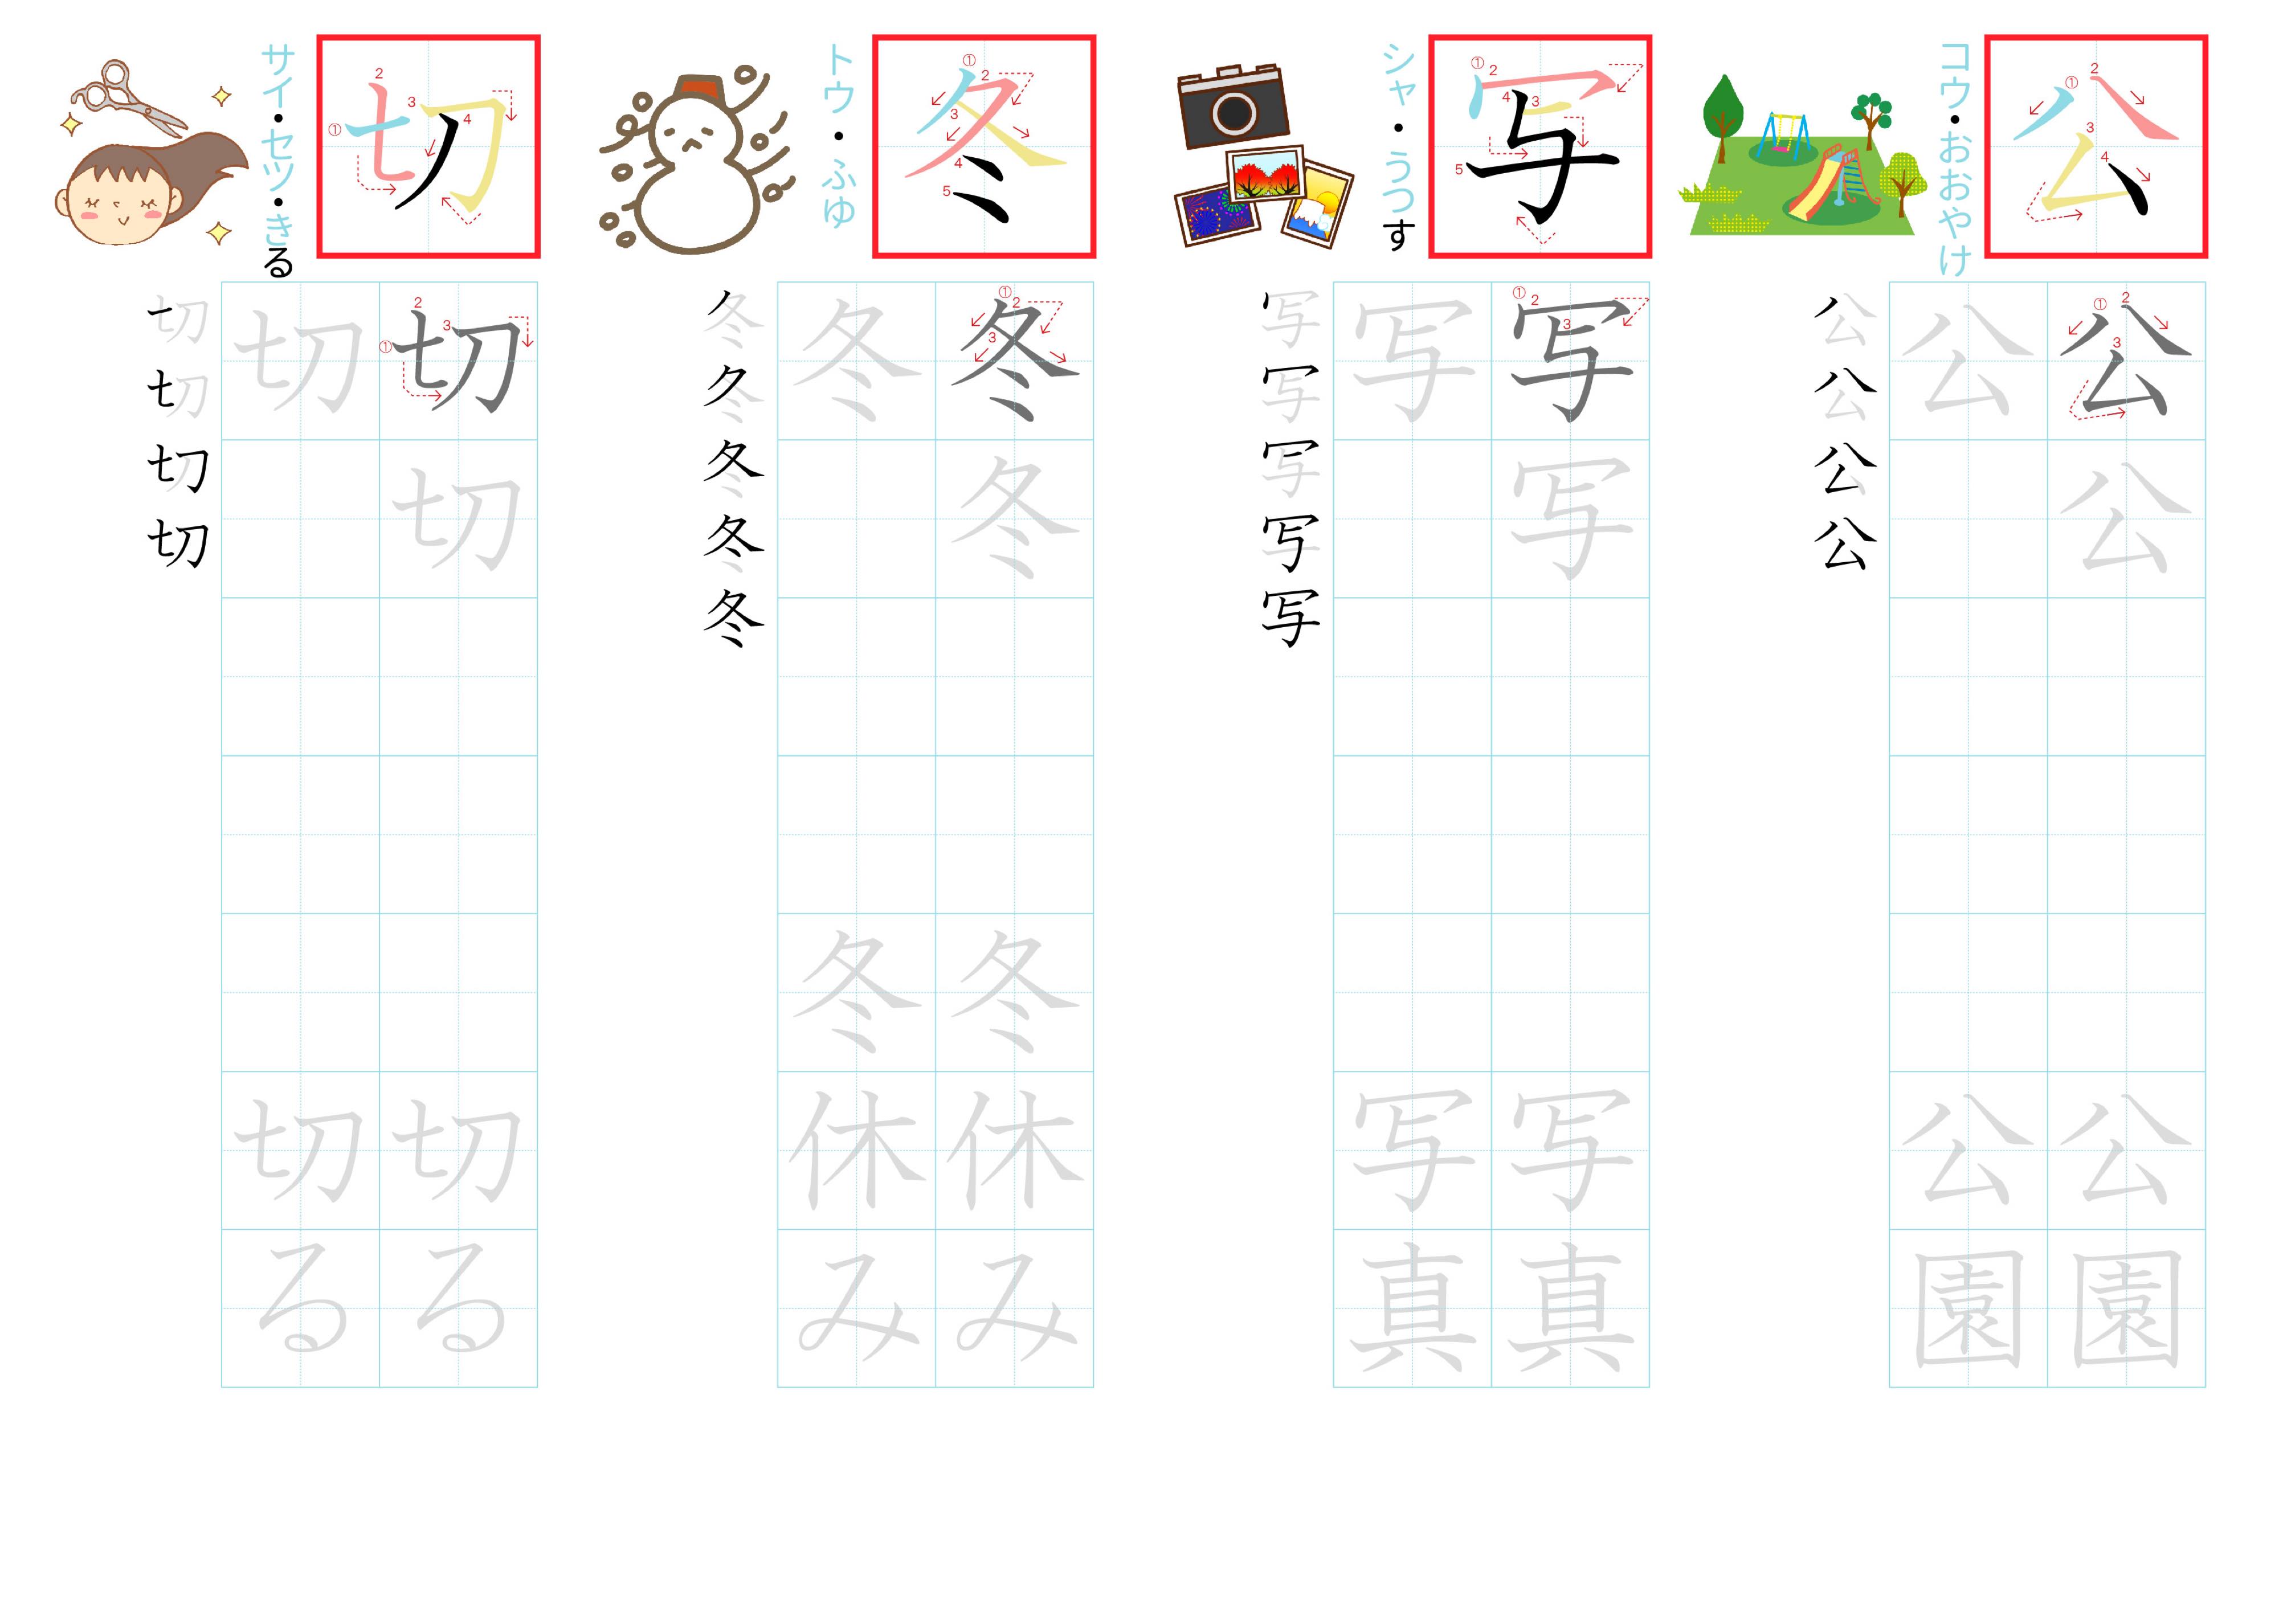 kanji-practice-card-n4-japanese-025